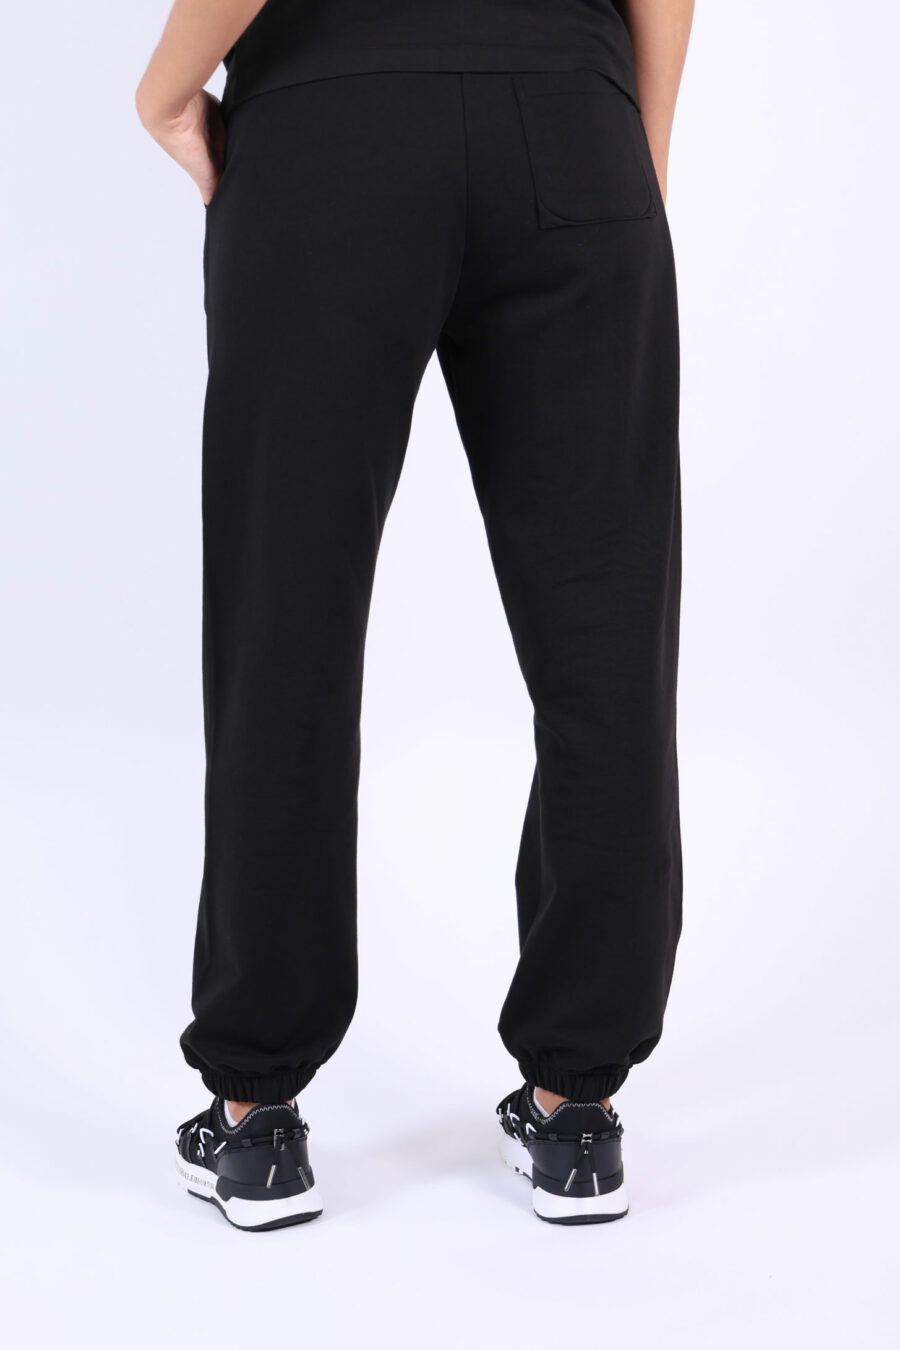 Pantalón de chándal negro con minilogo "kenzo paris" - 3612230514959 1 2